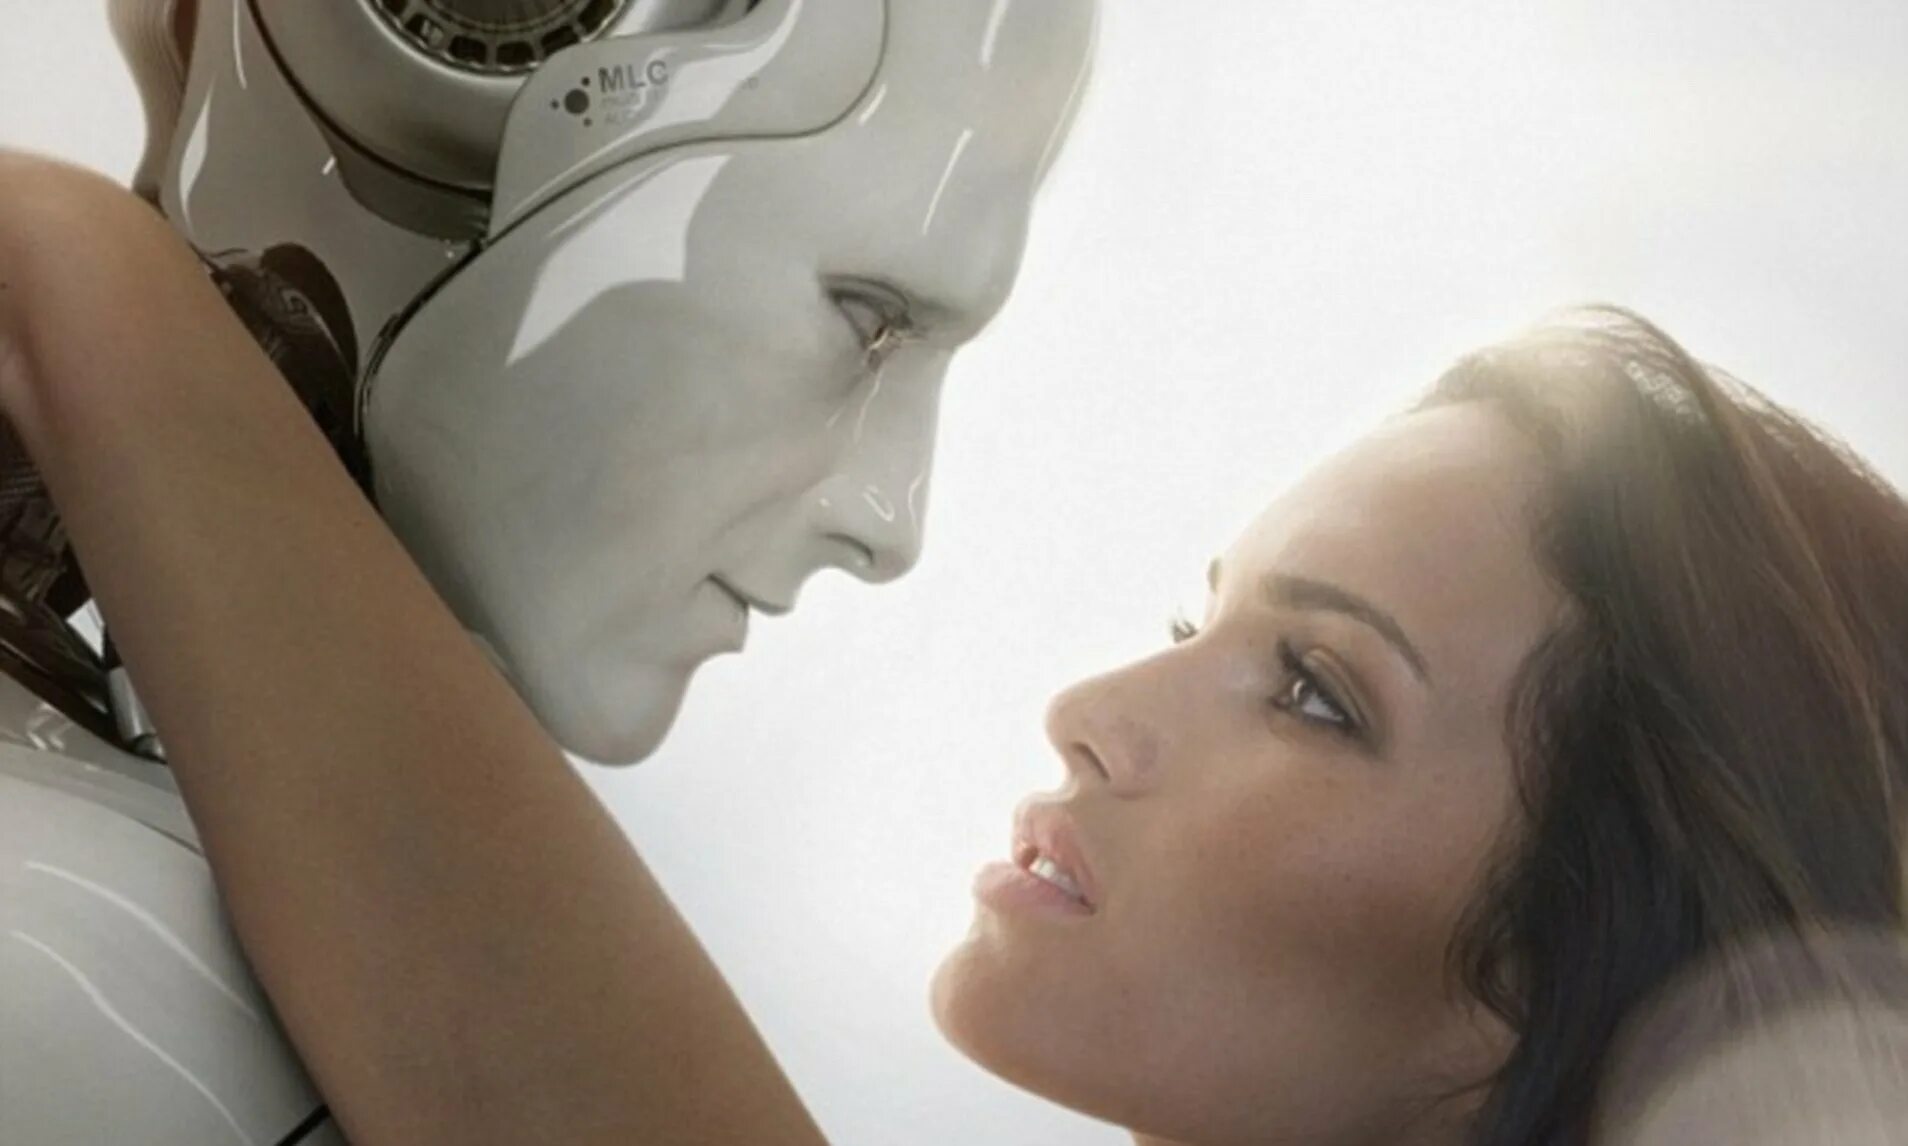 Робот женщина для мужчин. Любовь между роботом и человеком. Женщина робот для любви. Робот и человек любовь. Ии девушка чат